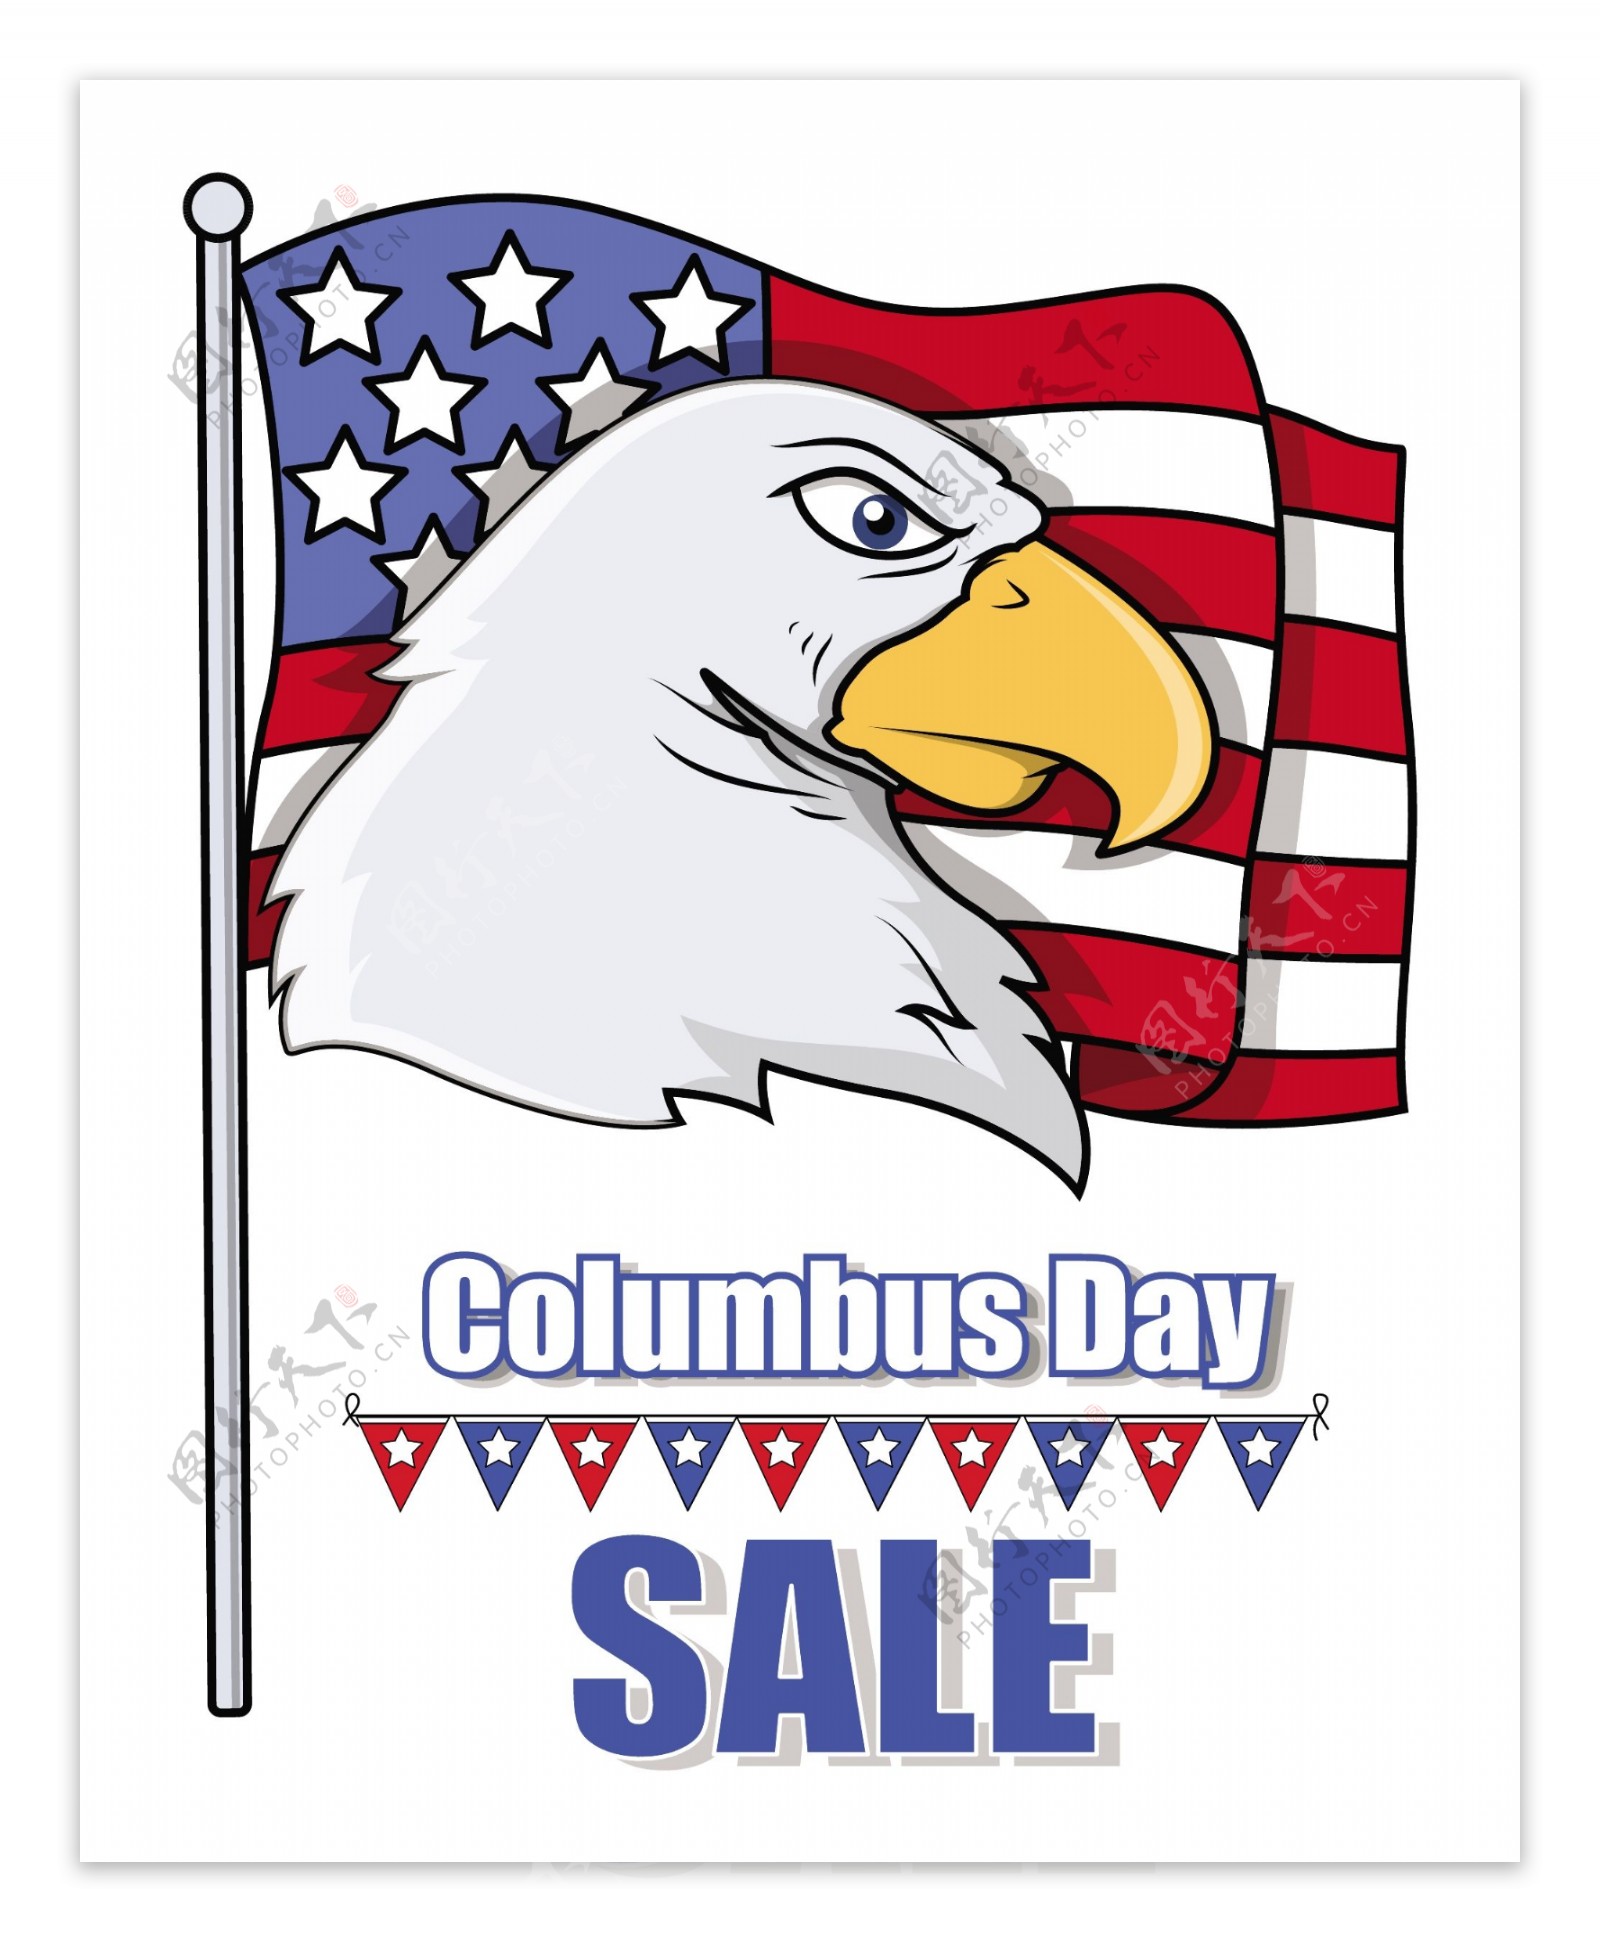 鹰头与哥伦布日销售的旗帜和美国国旗矢量